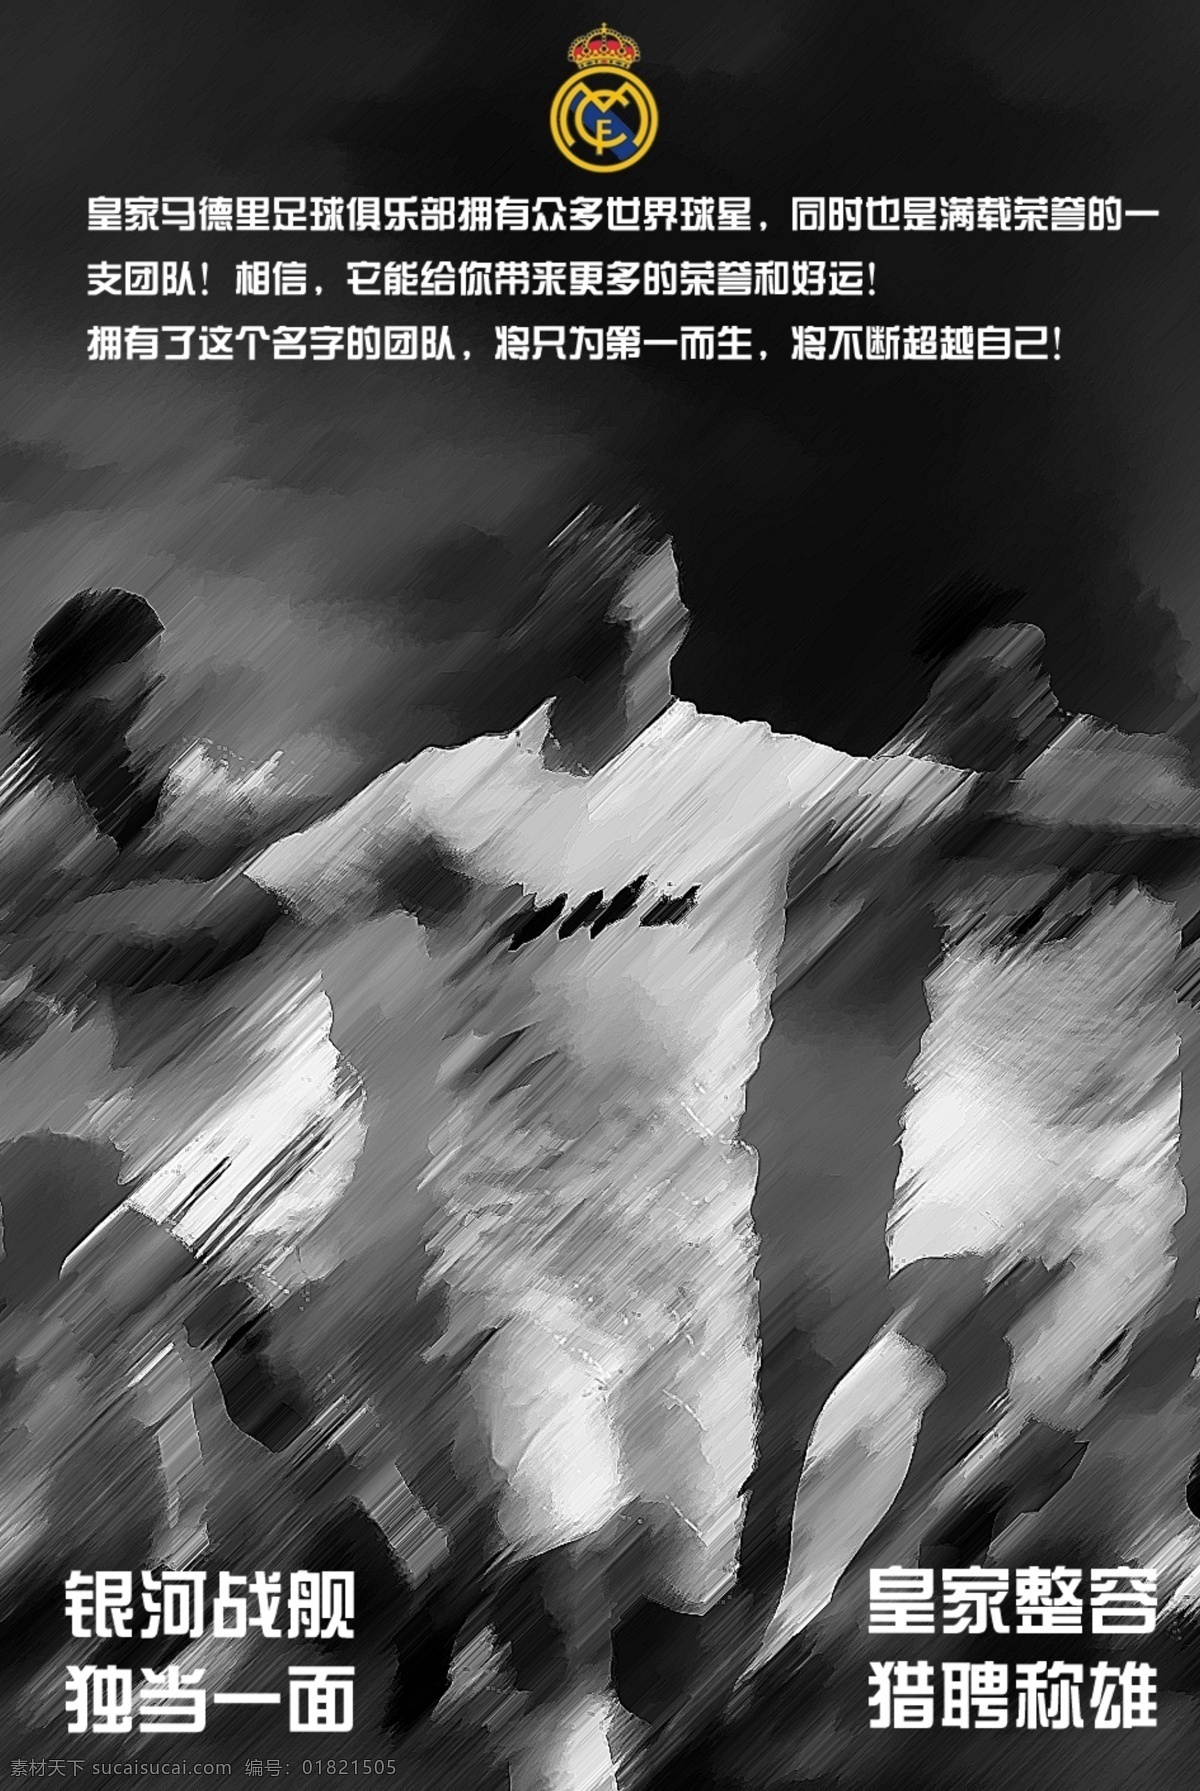 动感 宣传海报 系列 皇家 足球队 宣传 皇家足球队伍 海报 宣传单 彩页 dm